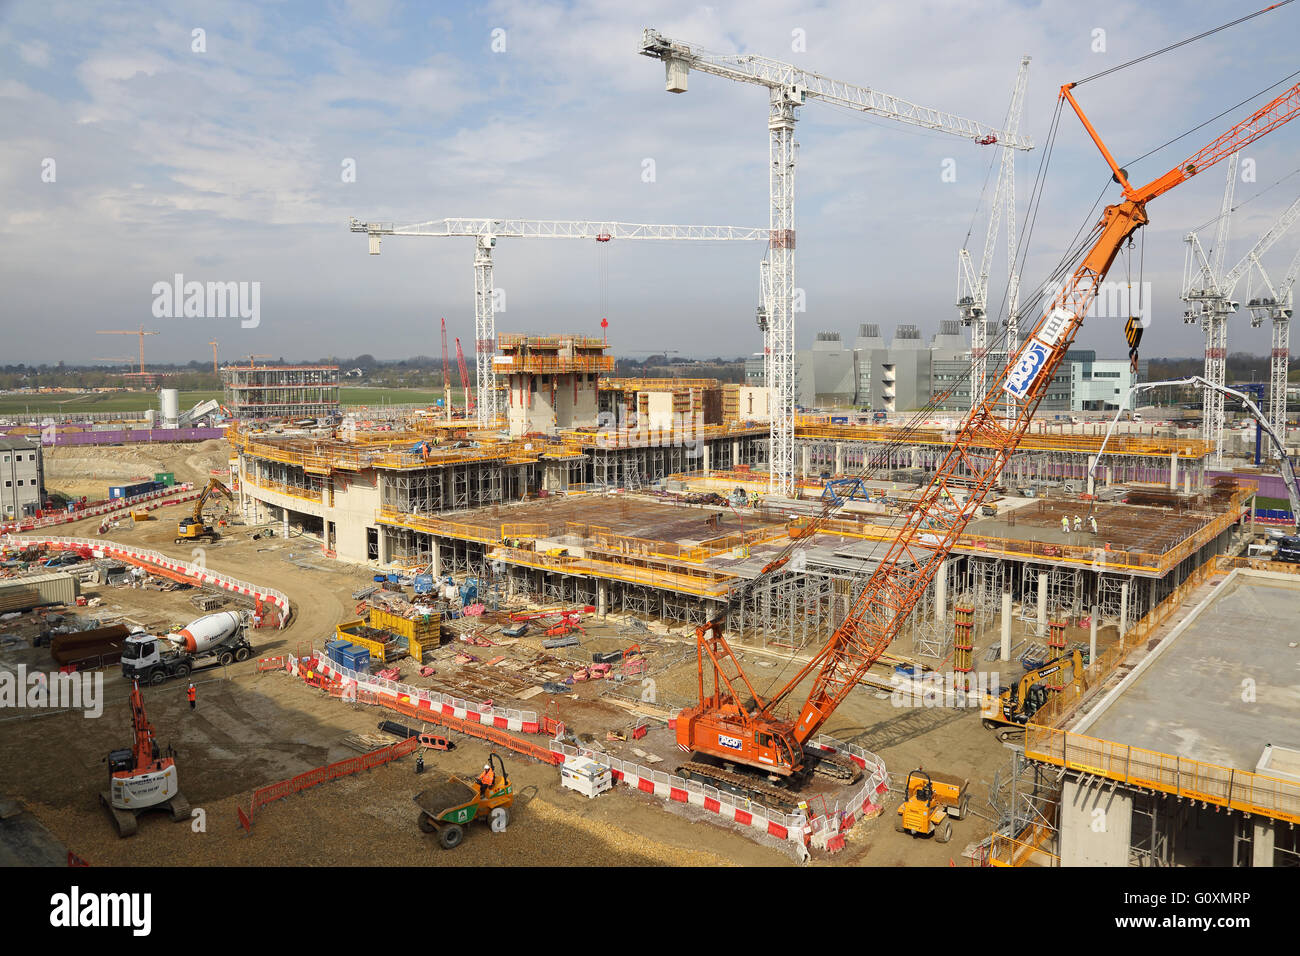 La costruzione del nuovo ospedale Papworth a Cambridge nel Regno Unito. Vista ad alto livello da un edificio adiacente. Mostra la nuova Astra Zenica edificio al di là. Foto Stock